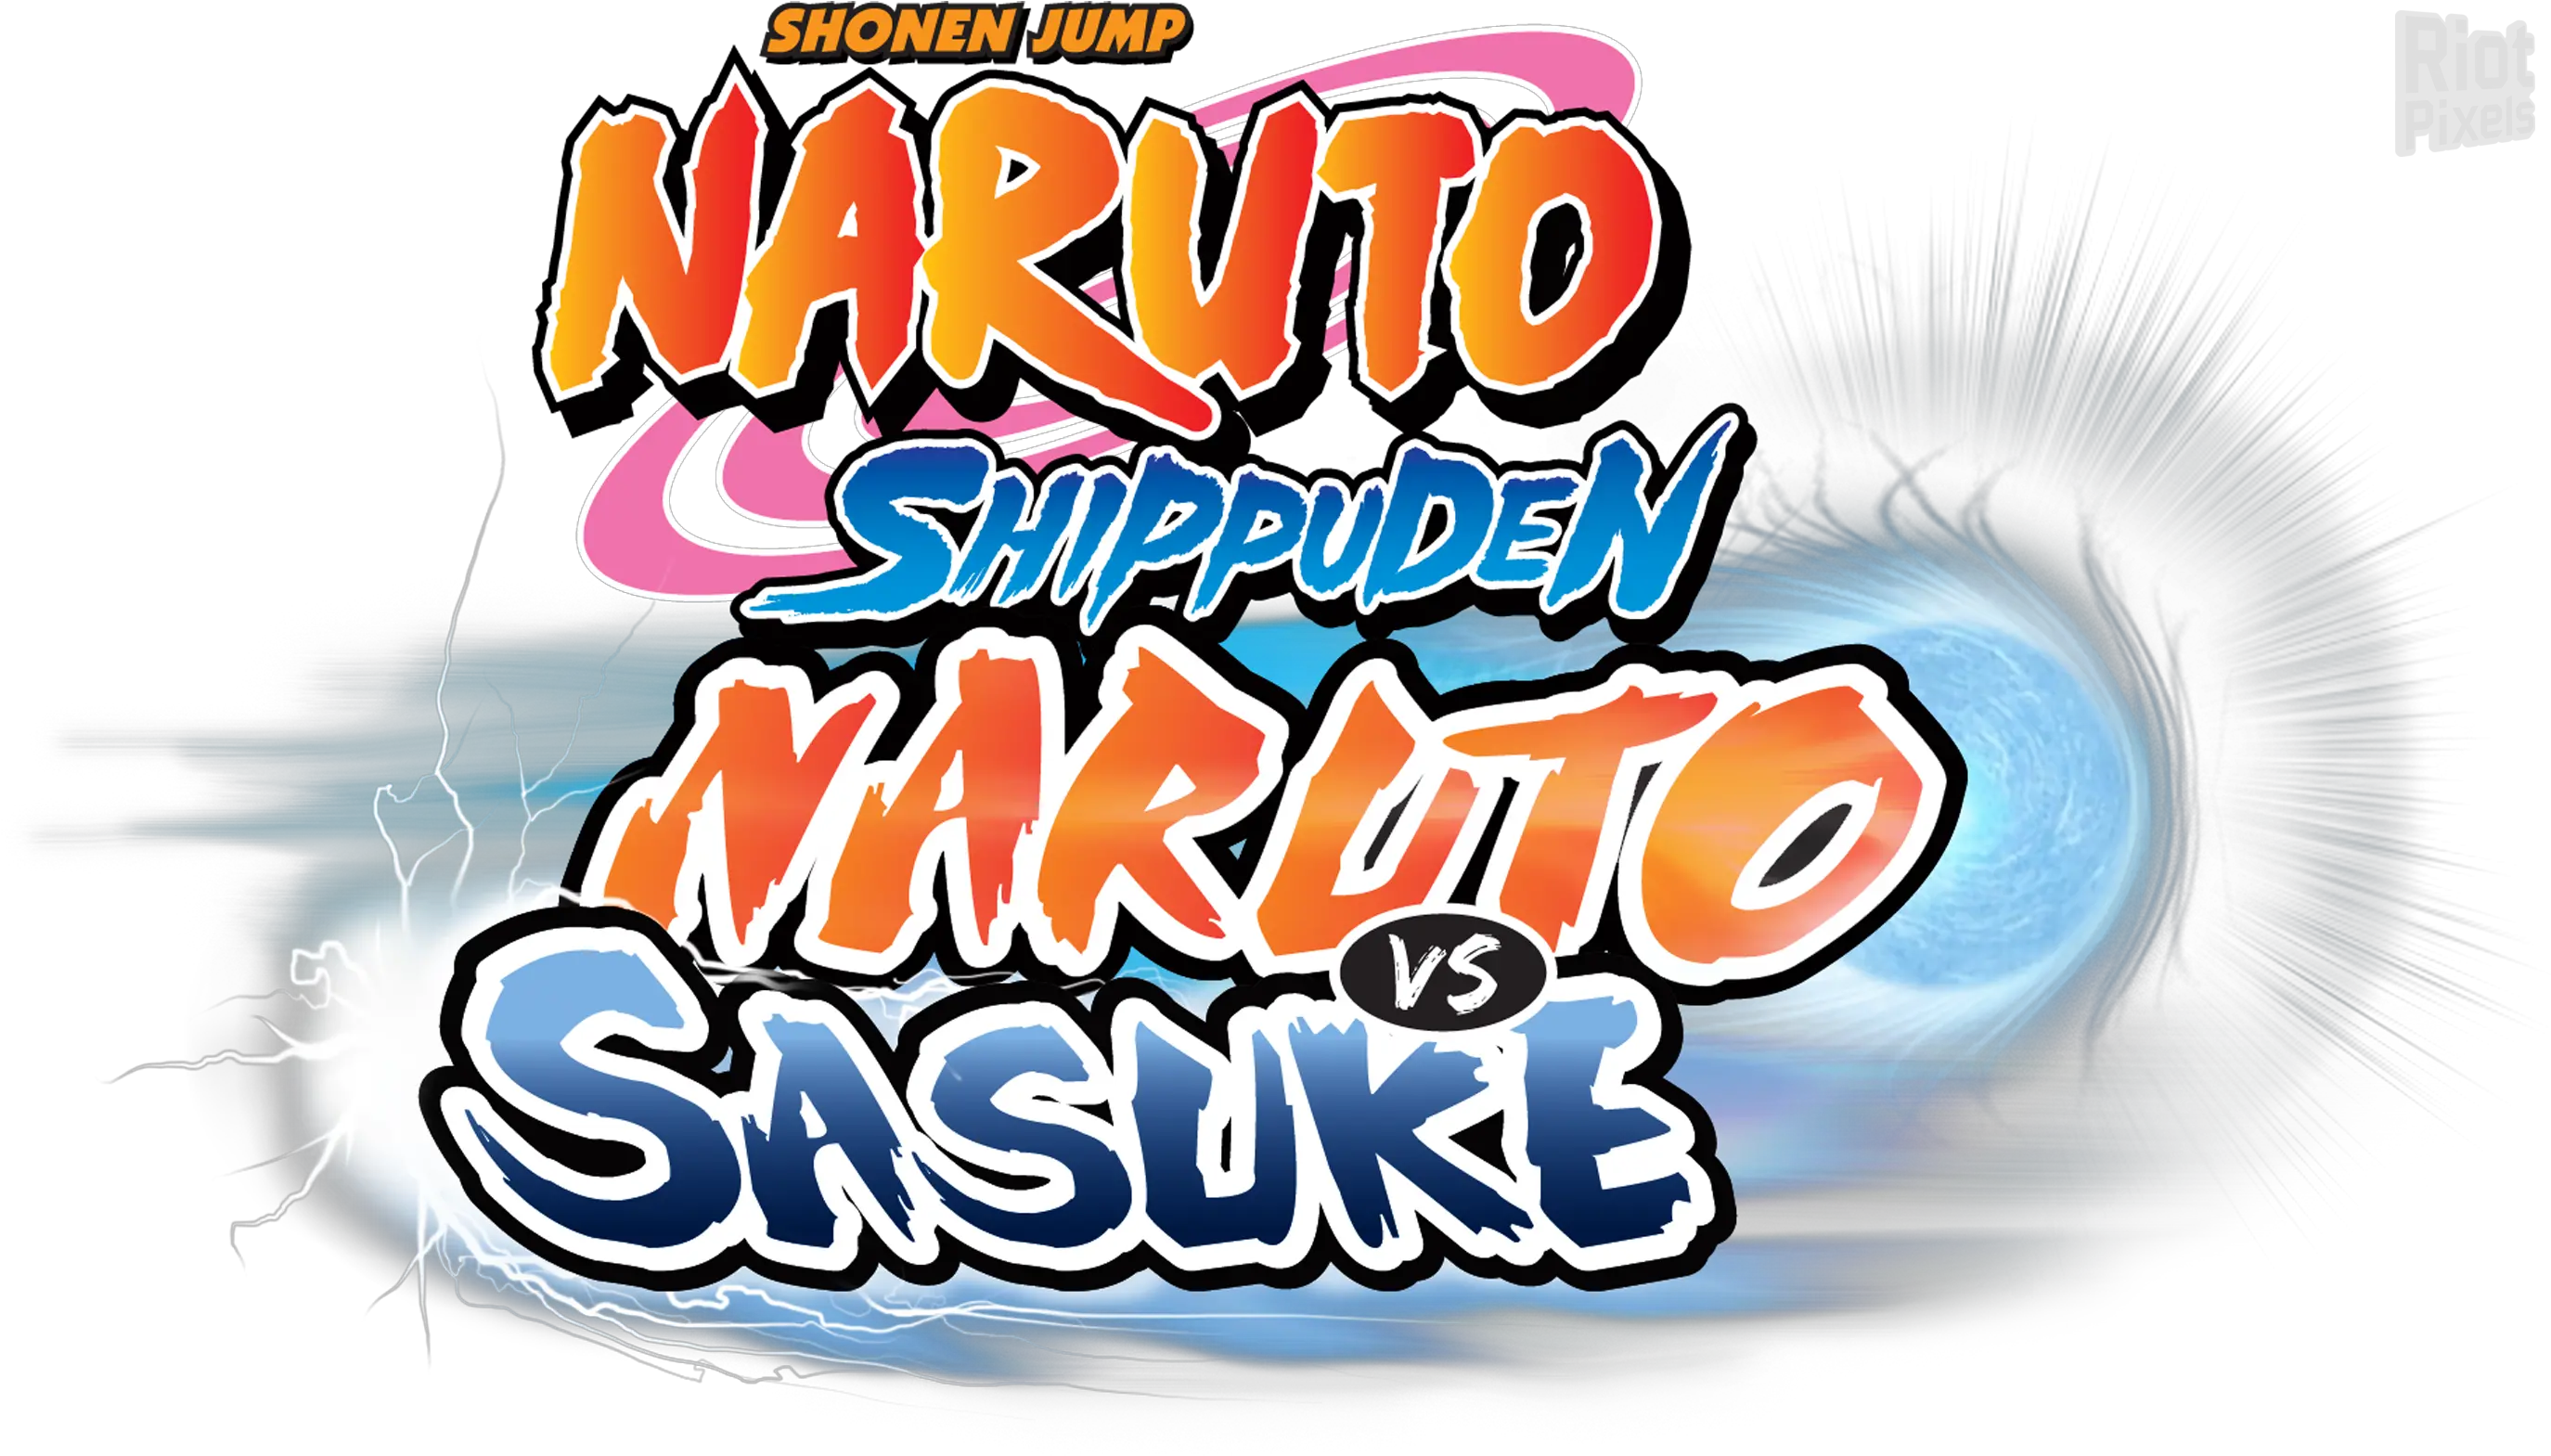 Download Hd 25 August Naruto Shippuden Naruto Vs Sasuke Naruto Shippuden Naruto Vs Sasuke Logo Png Shonen Jump Logo